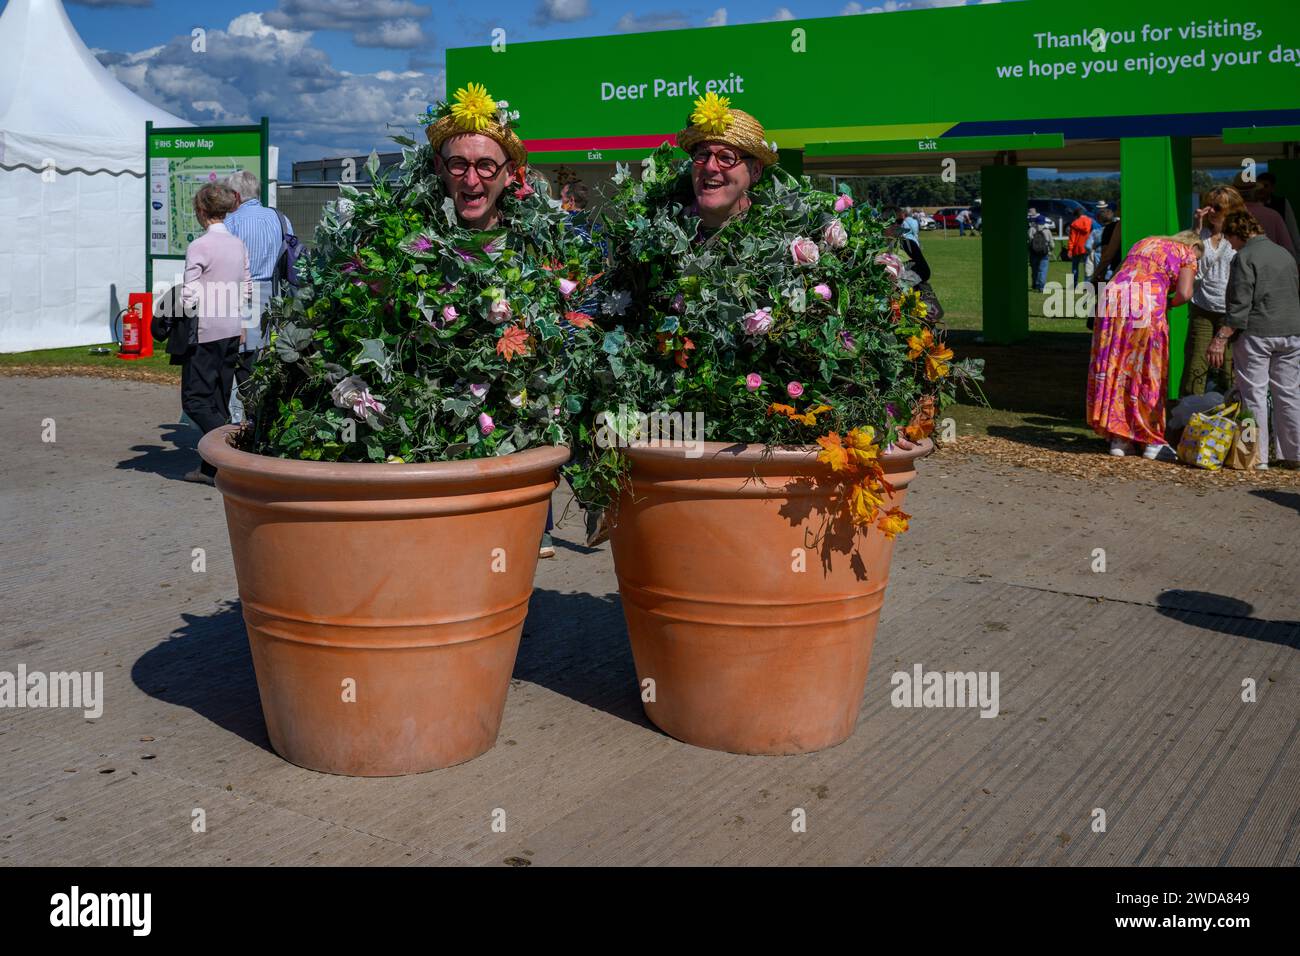 Flowerpot hommes habillés dans des tenues drôles (artistes travaillant en s'amusant, visages souriants heureux) - RHS Flower Show Tatton Park 2023, Cheshire Angleterre Royaume-Uni. Banque D'Images